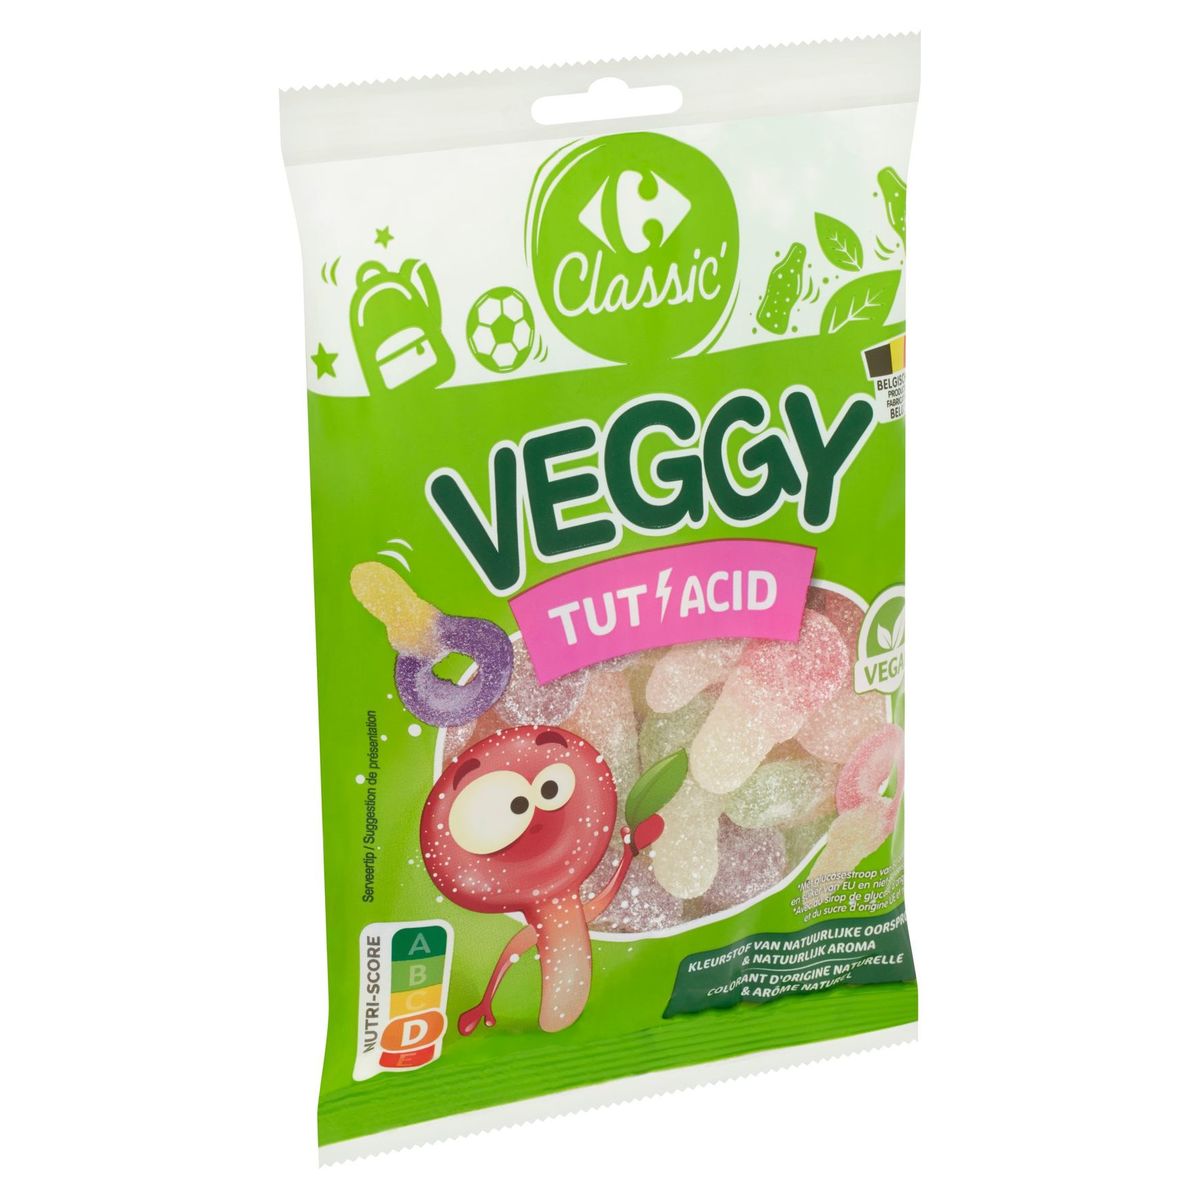 Carrefour Classic' Veggy Tut' Acid 150 g